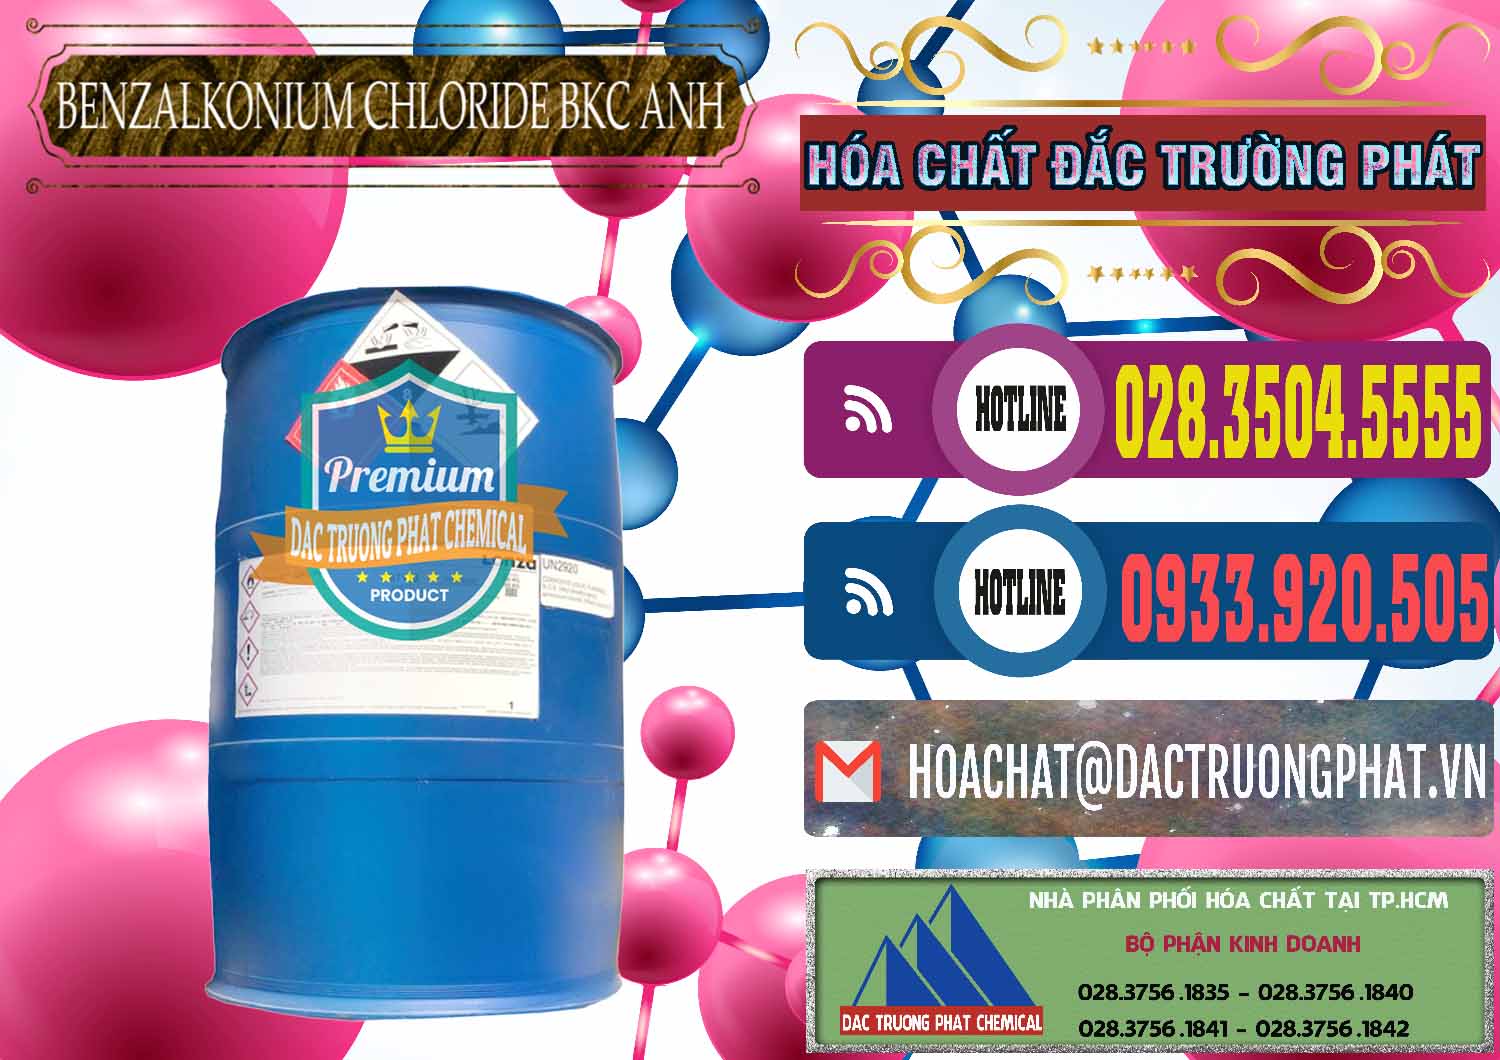 Cty chuyên cung cấp _ bán BKC - Benzalkonium Chloride 80% Anh Quốc Uk Kingdoms - 0457 - Nơi chuyên kinh doanh và phân phối hóa chất tại TP.HCM - muabanhoachat.com.vn